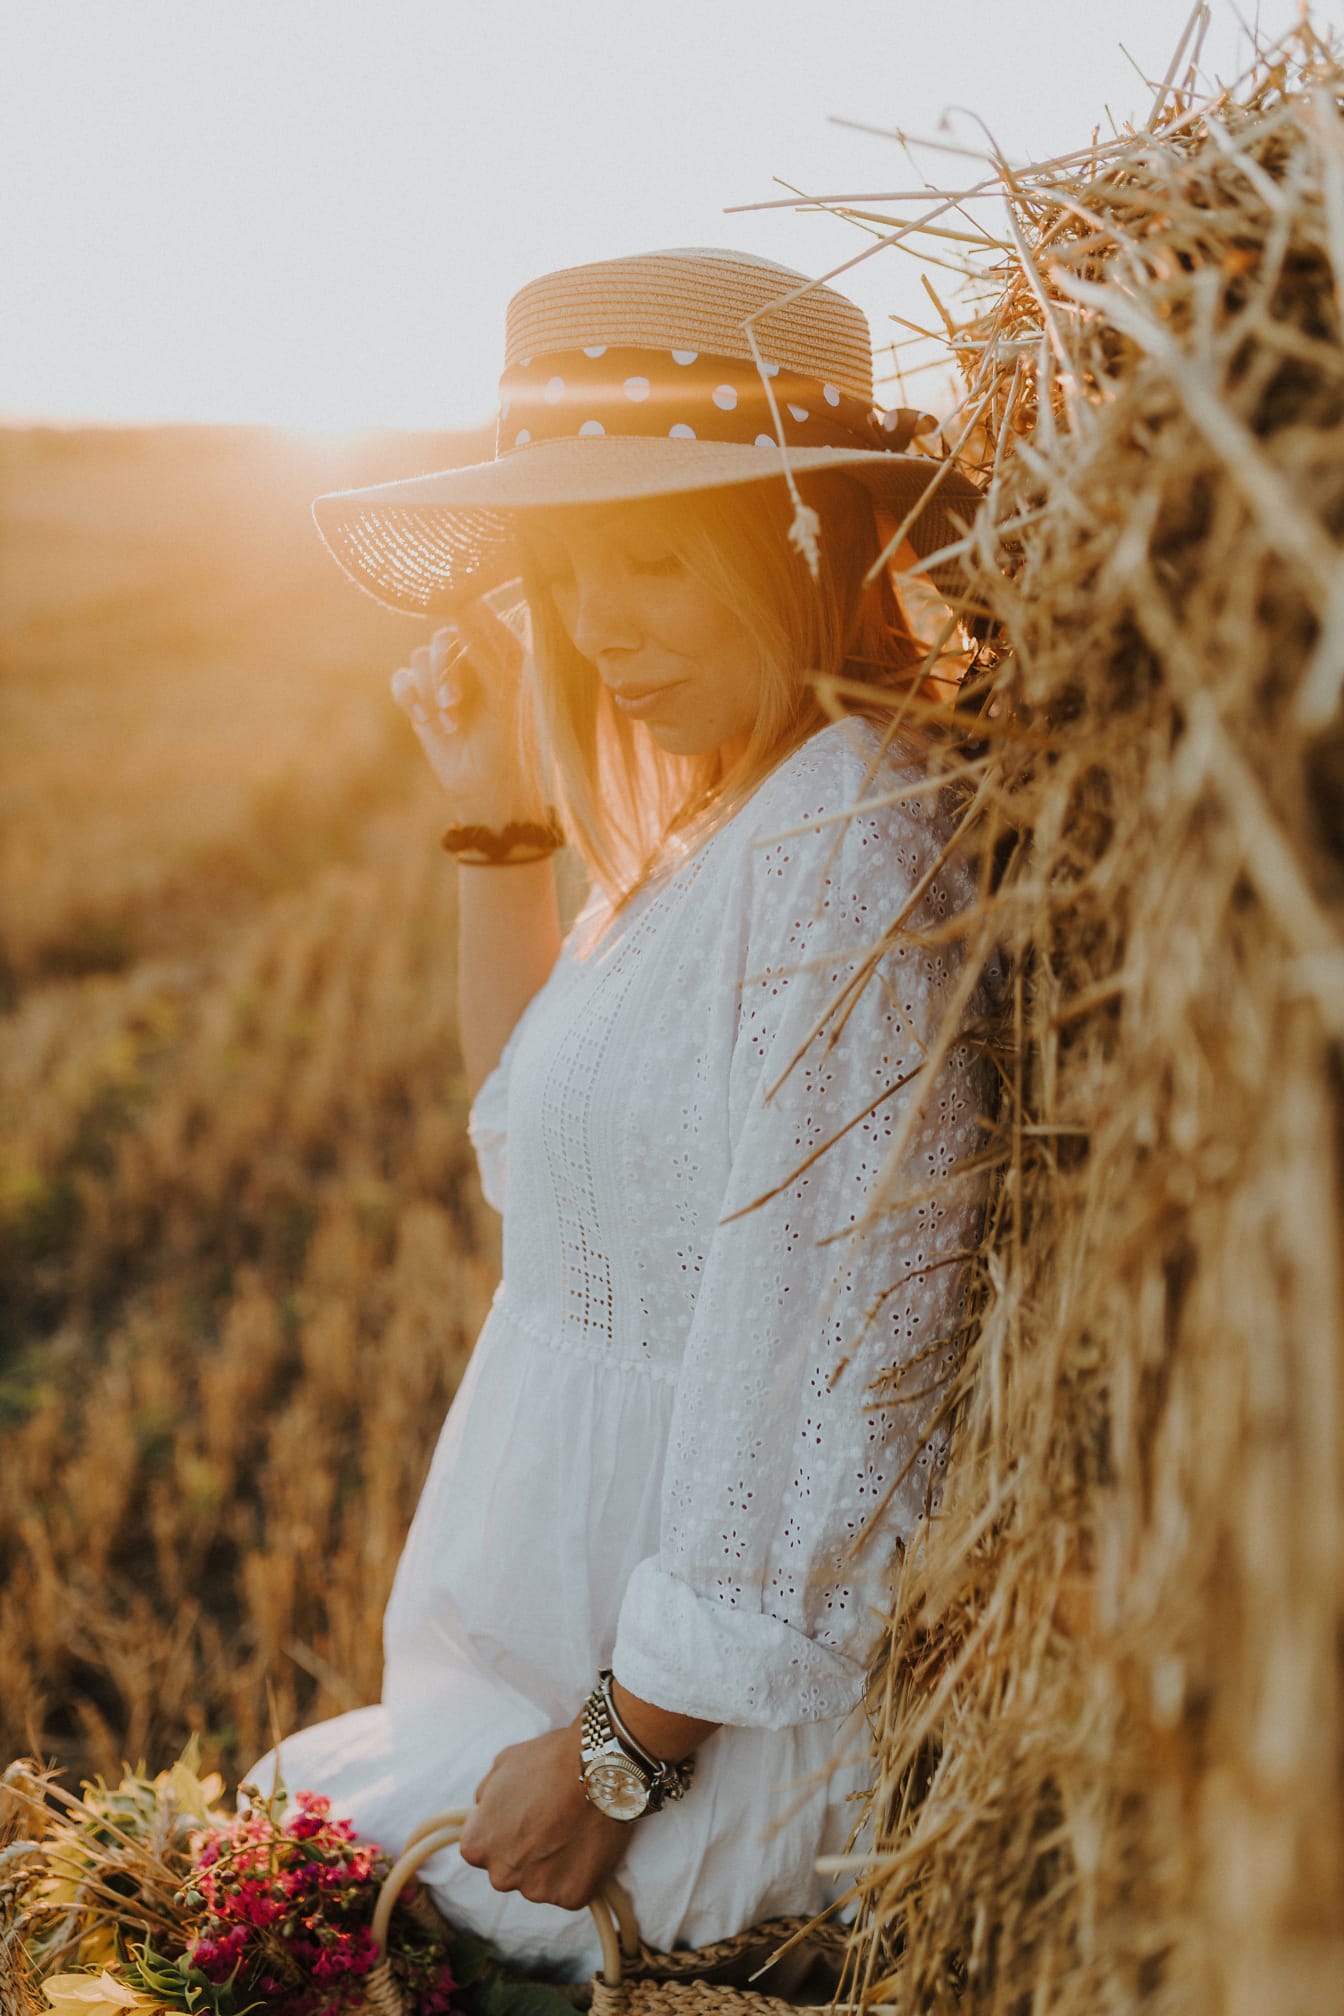 Симпатичная молодая женщина в шляпе у стога сена на пшеничном поле